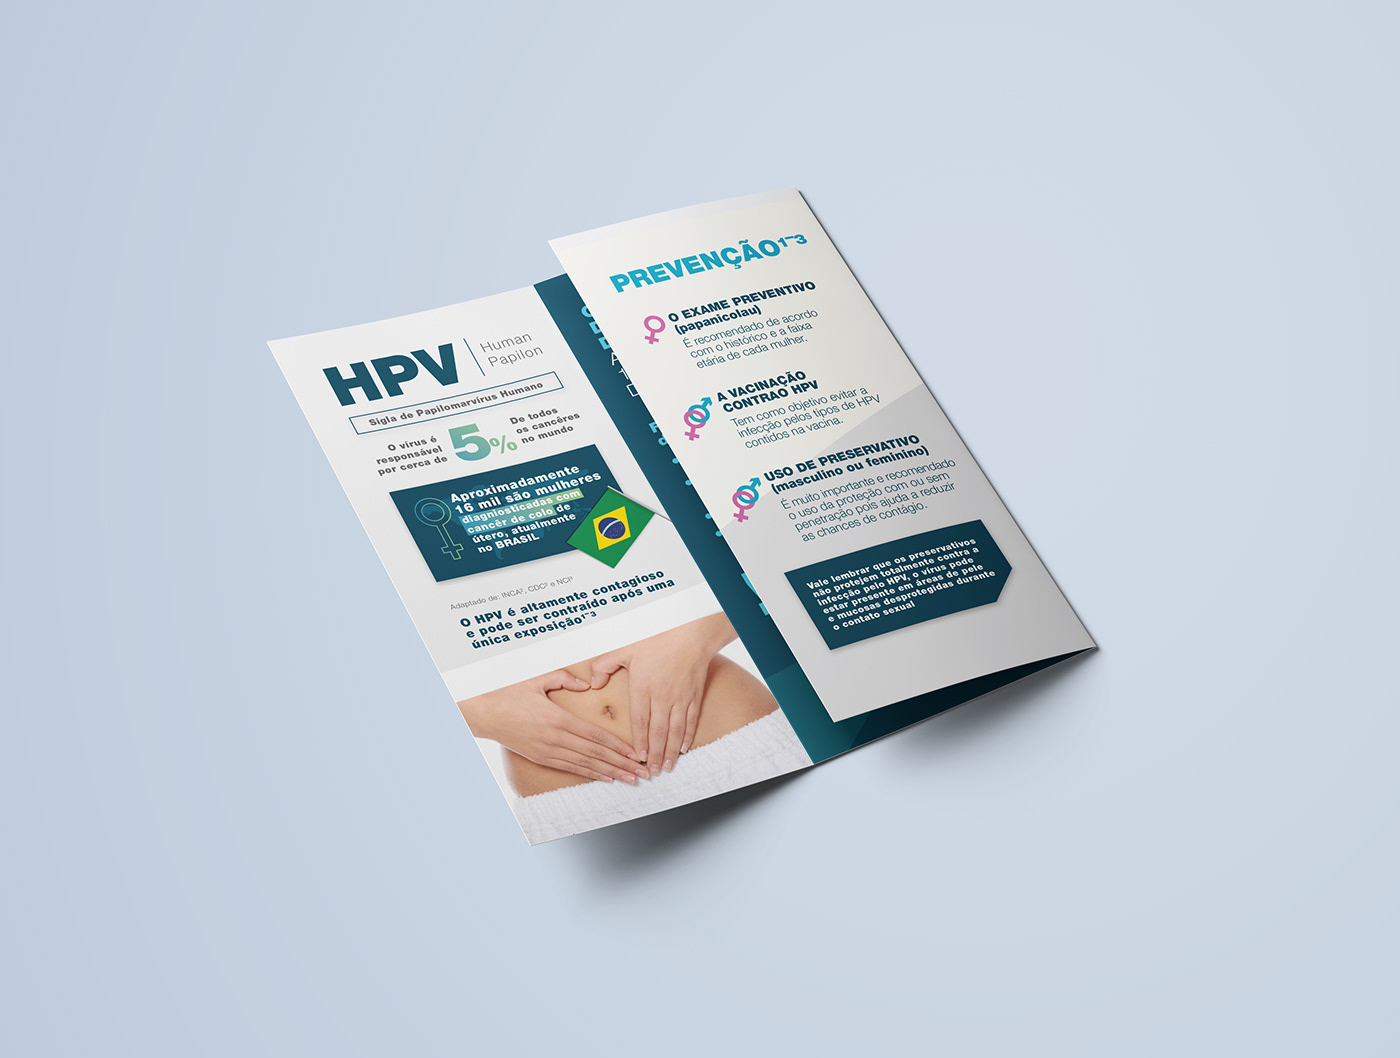 flyer HPV Prefeitura colombo impresso jovem adulto doença saúde